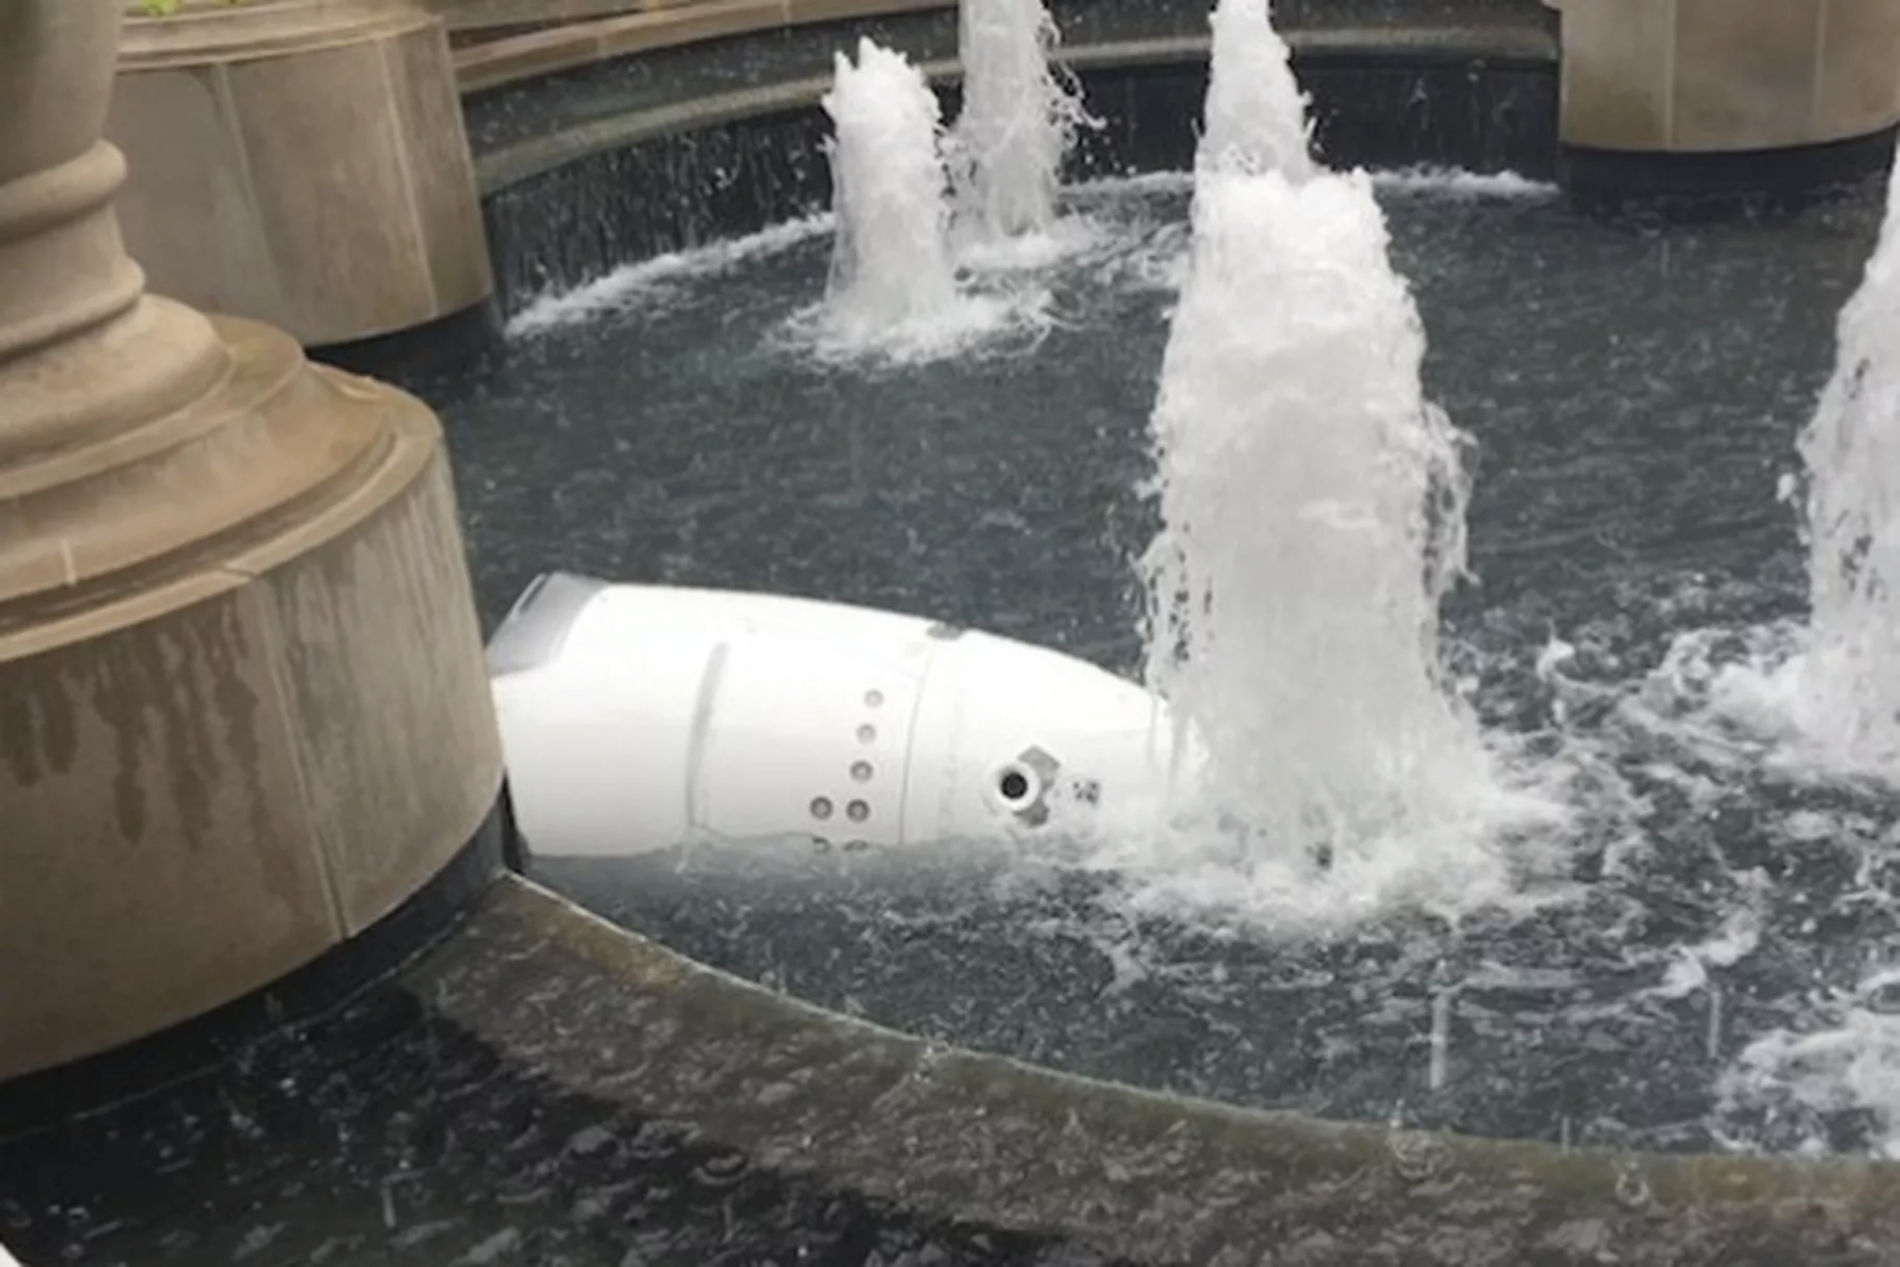 Robot Drowns via gregpinelo